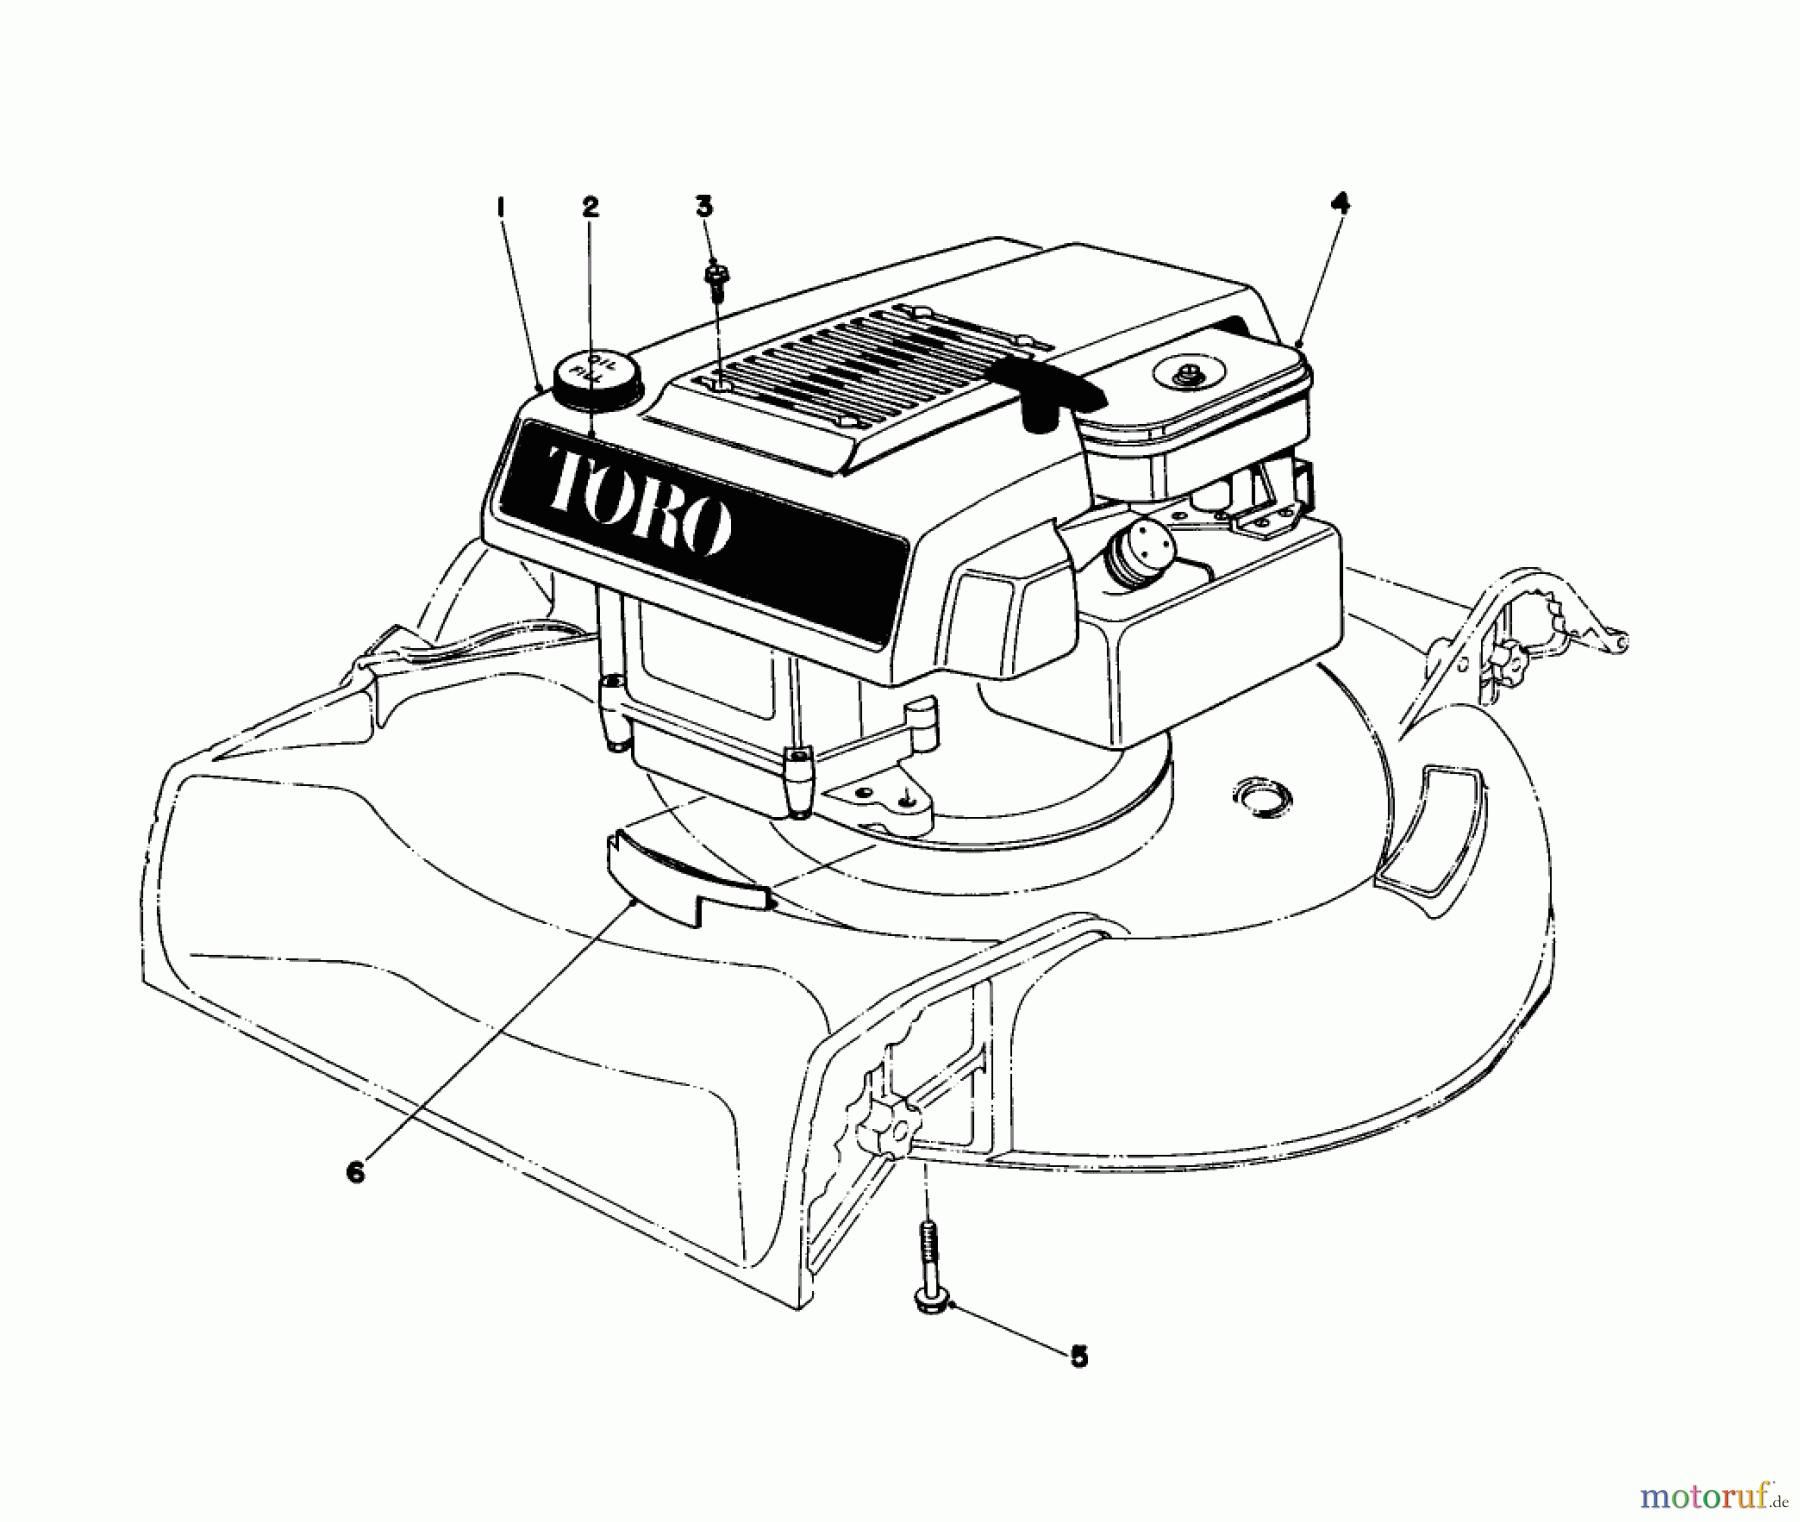  Toro Neu Mowers, Walk-Behind Seite 1 16300 - Toro Lawnmower, 1979 (9000001-9999999) ENGINE ASSEMBLY MODEL 16300 AND 16310